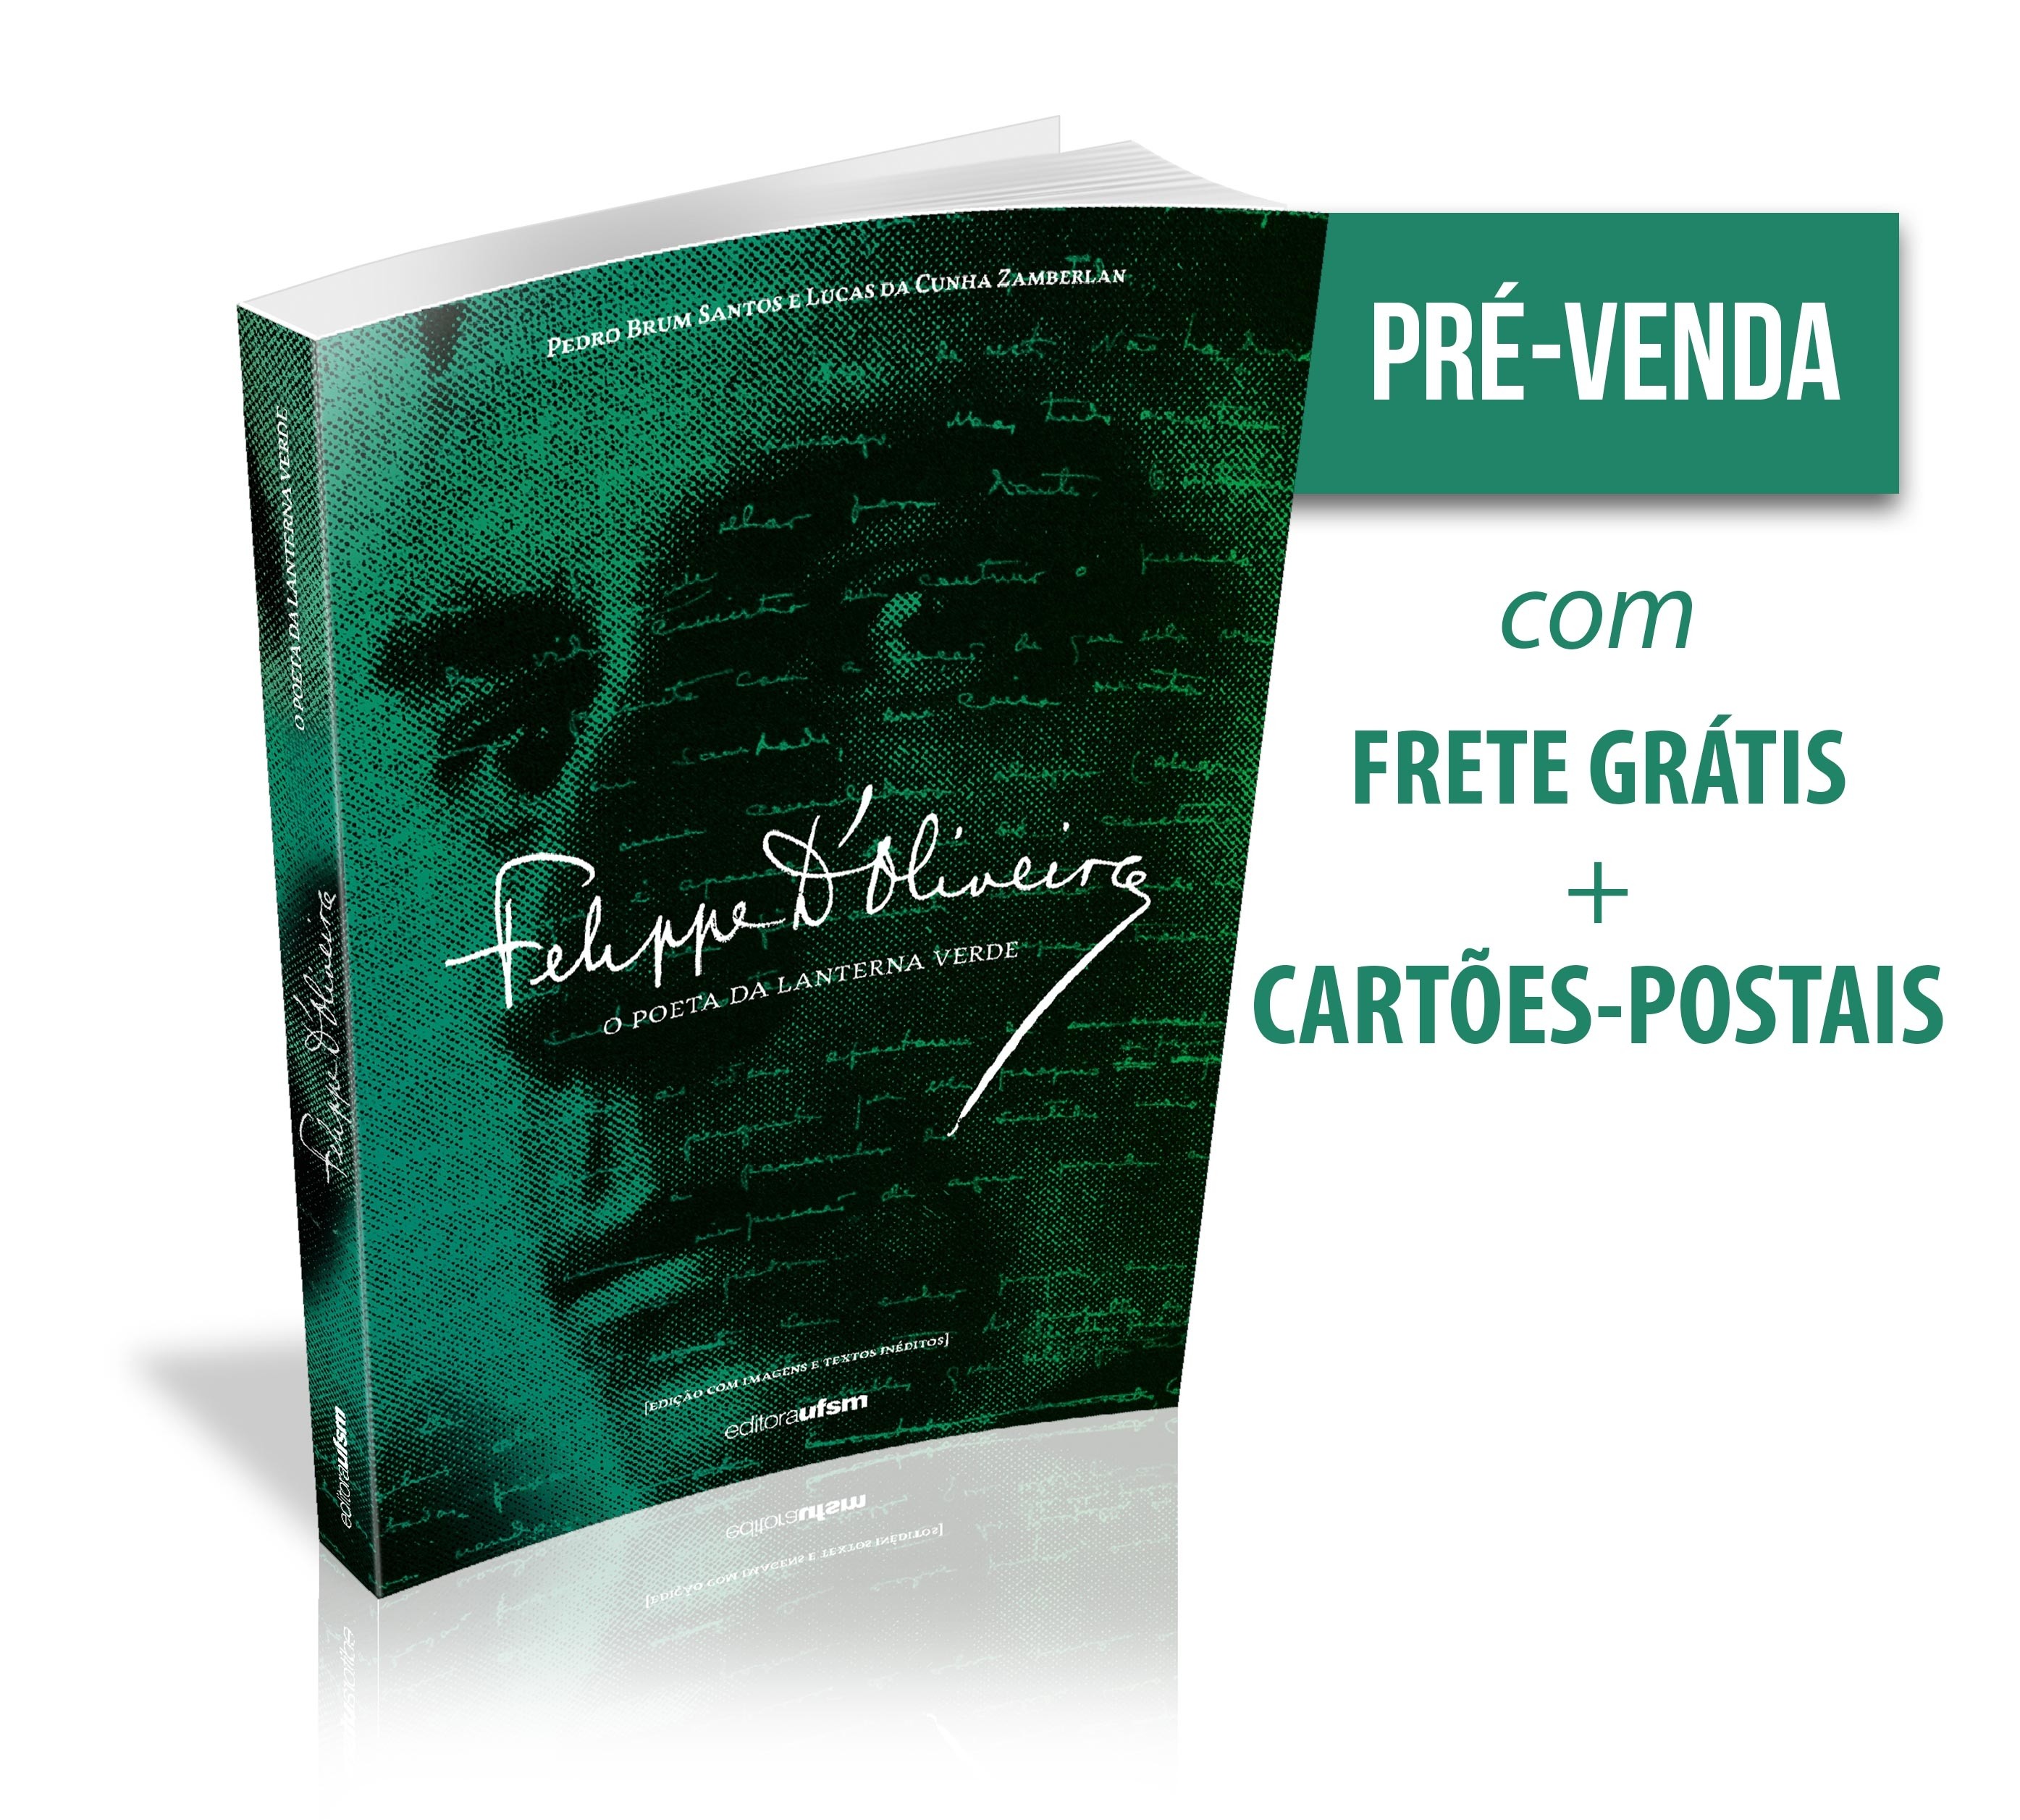 Capa do livro Felippe D'Oliveira - O poeta da lanterna verde - 1ª edição